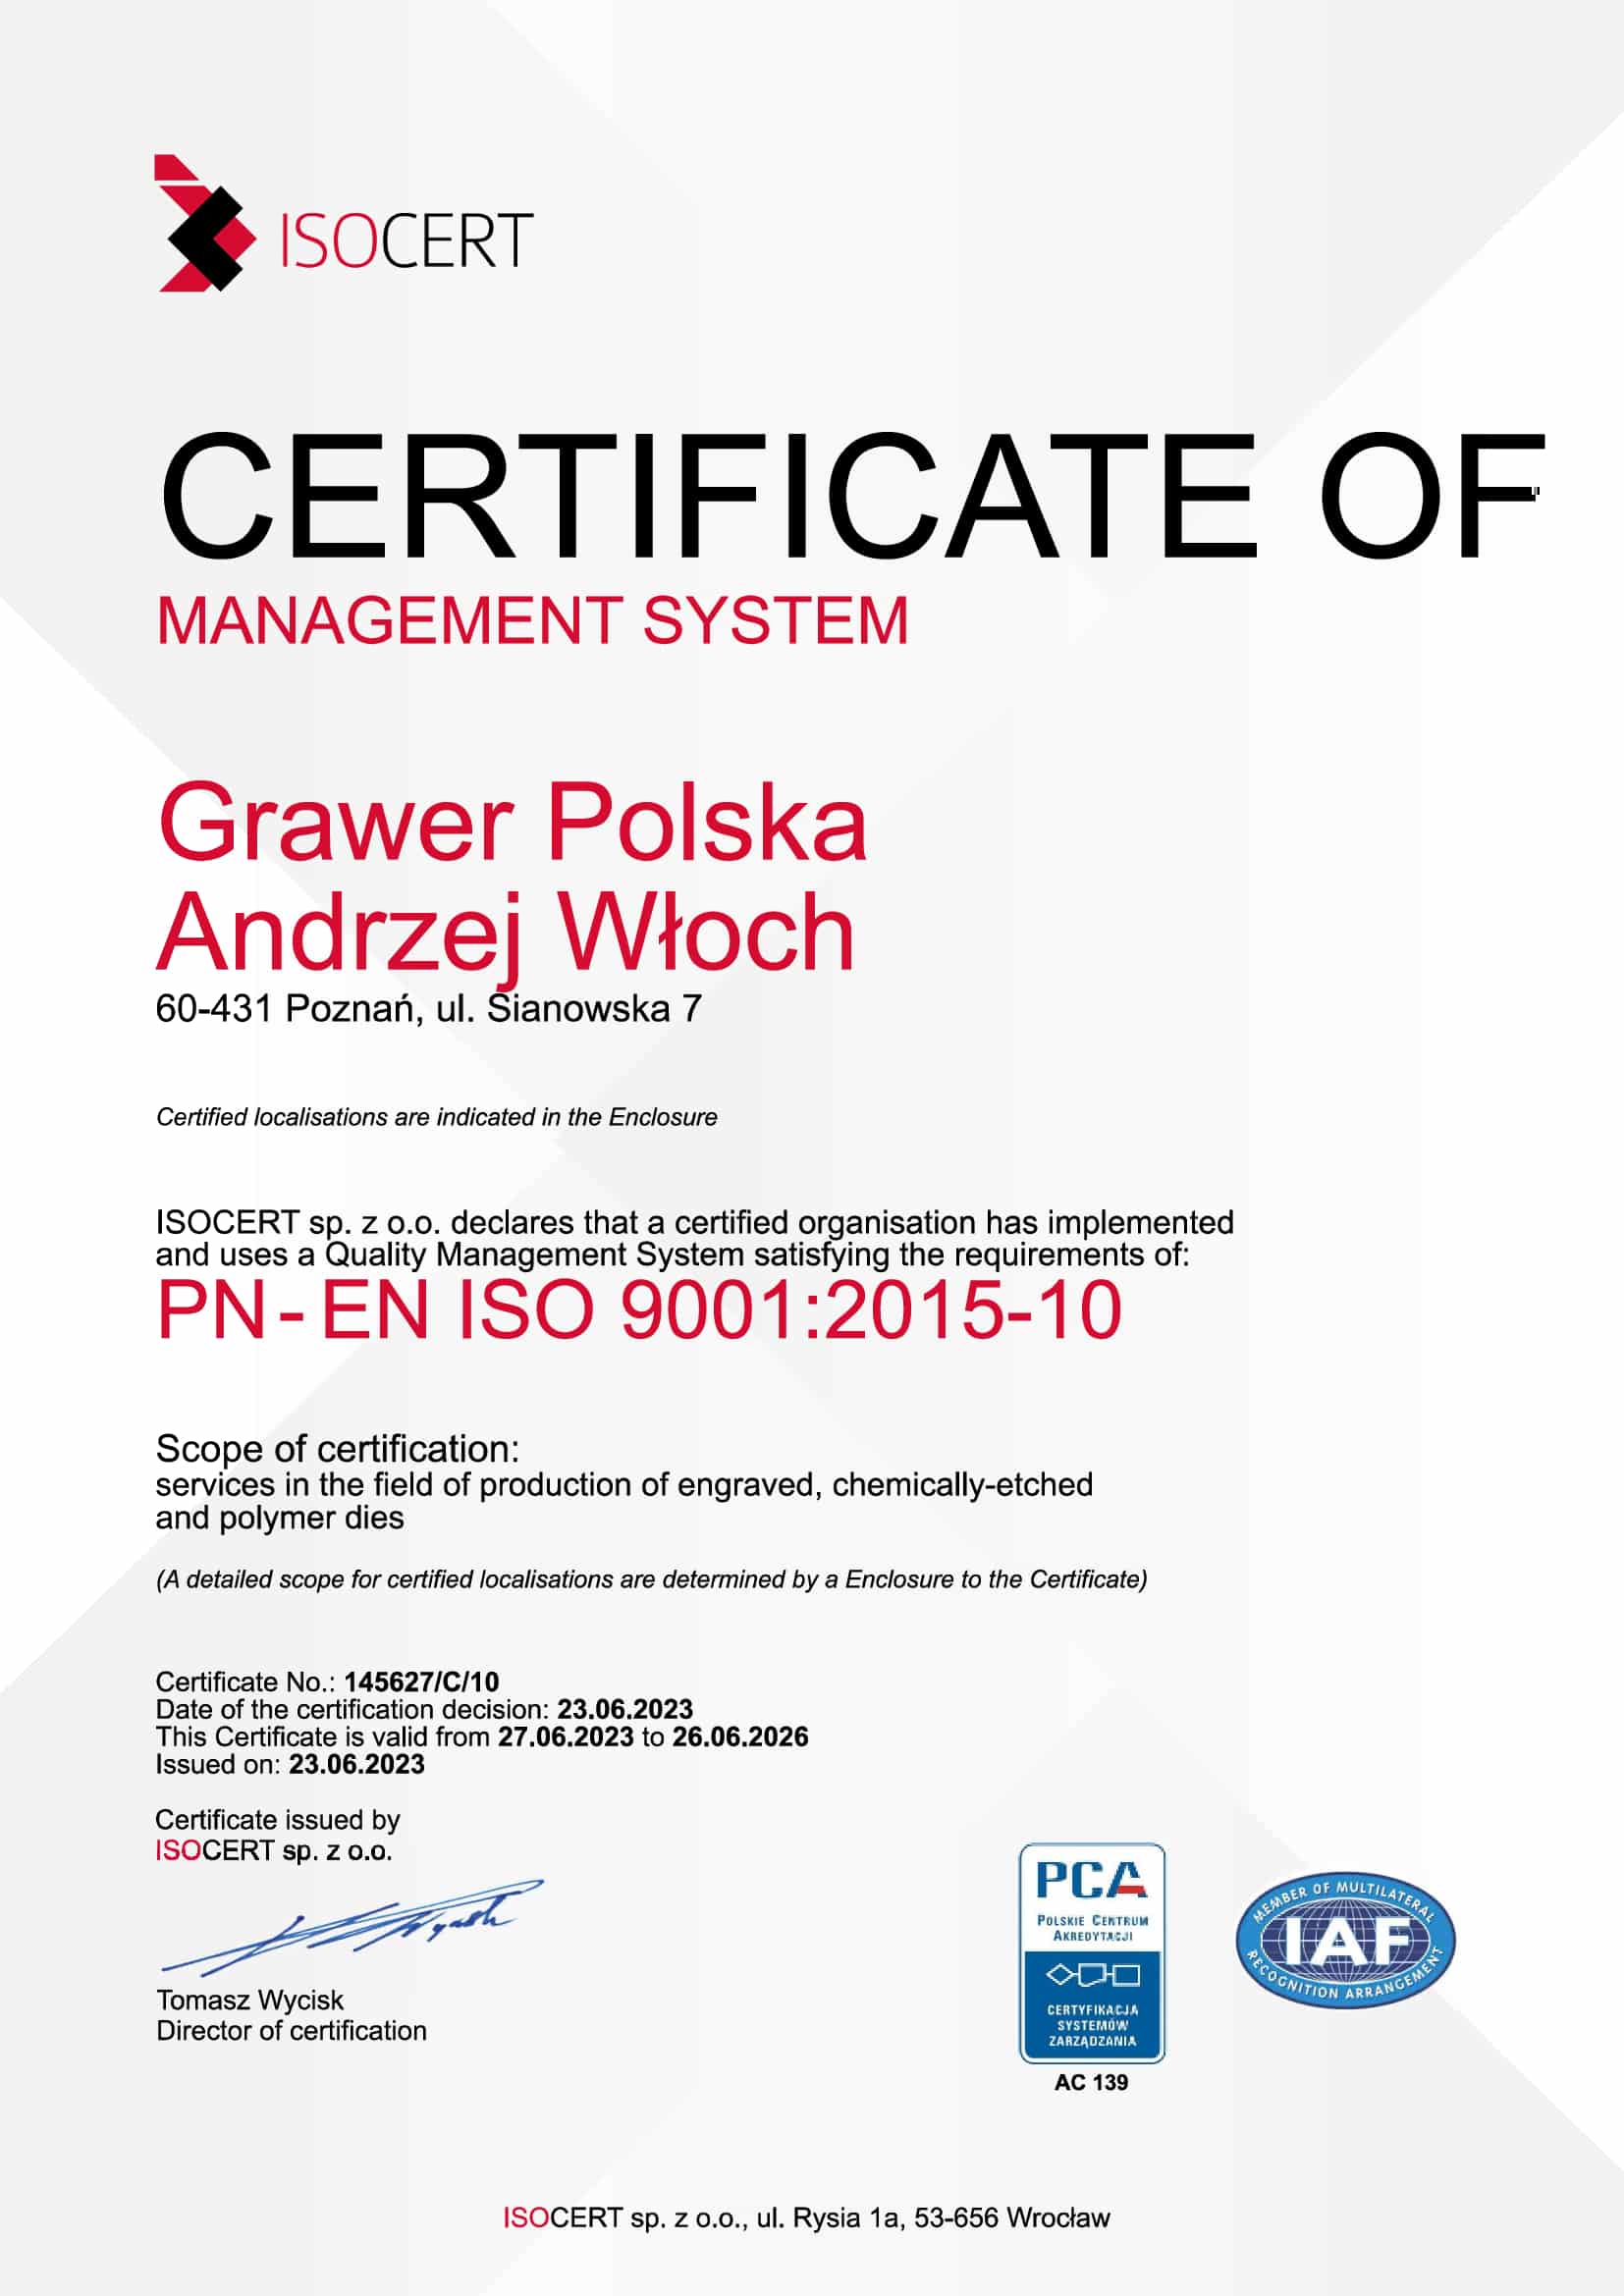 Grawer Polska ISO 9001 Zertifikat